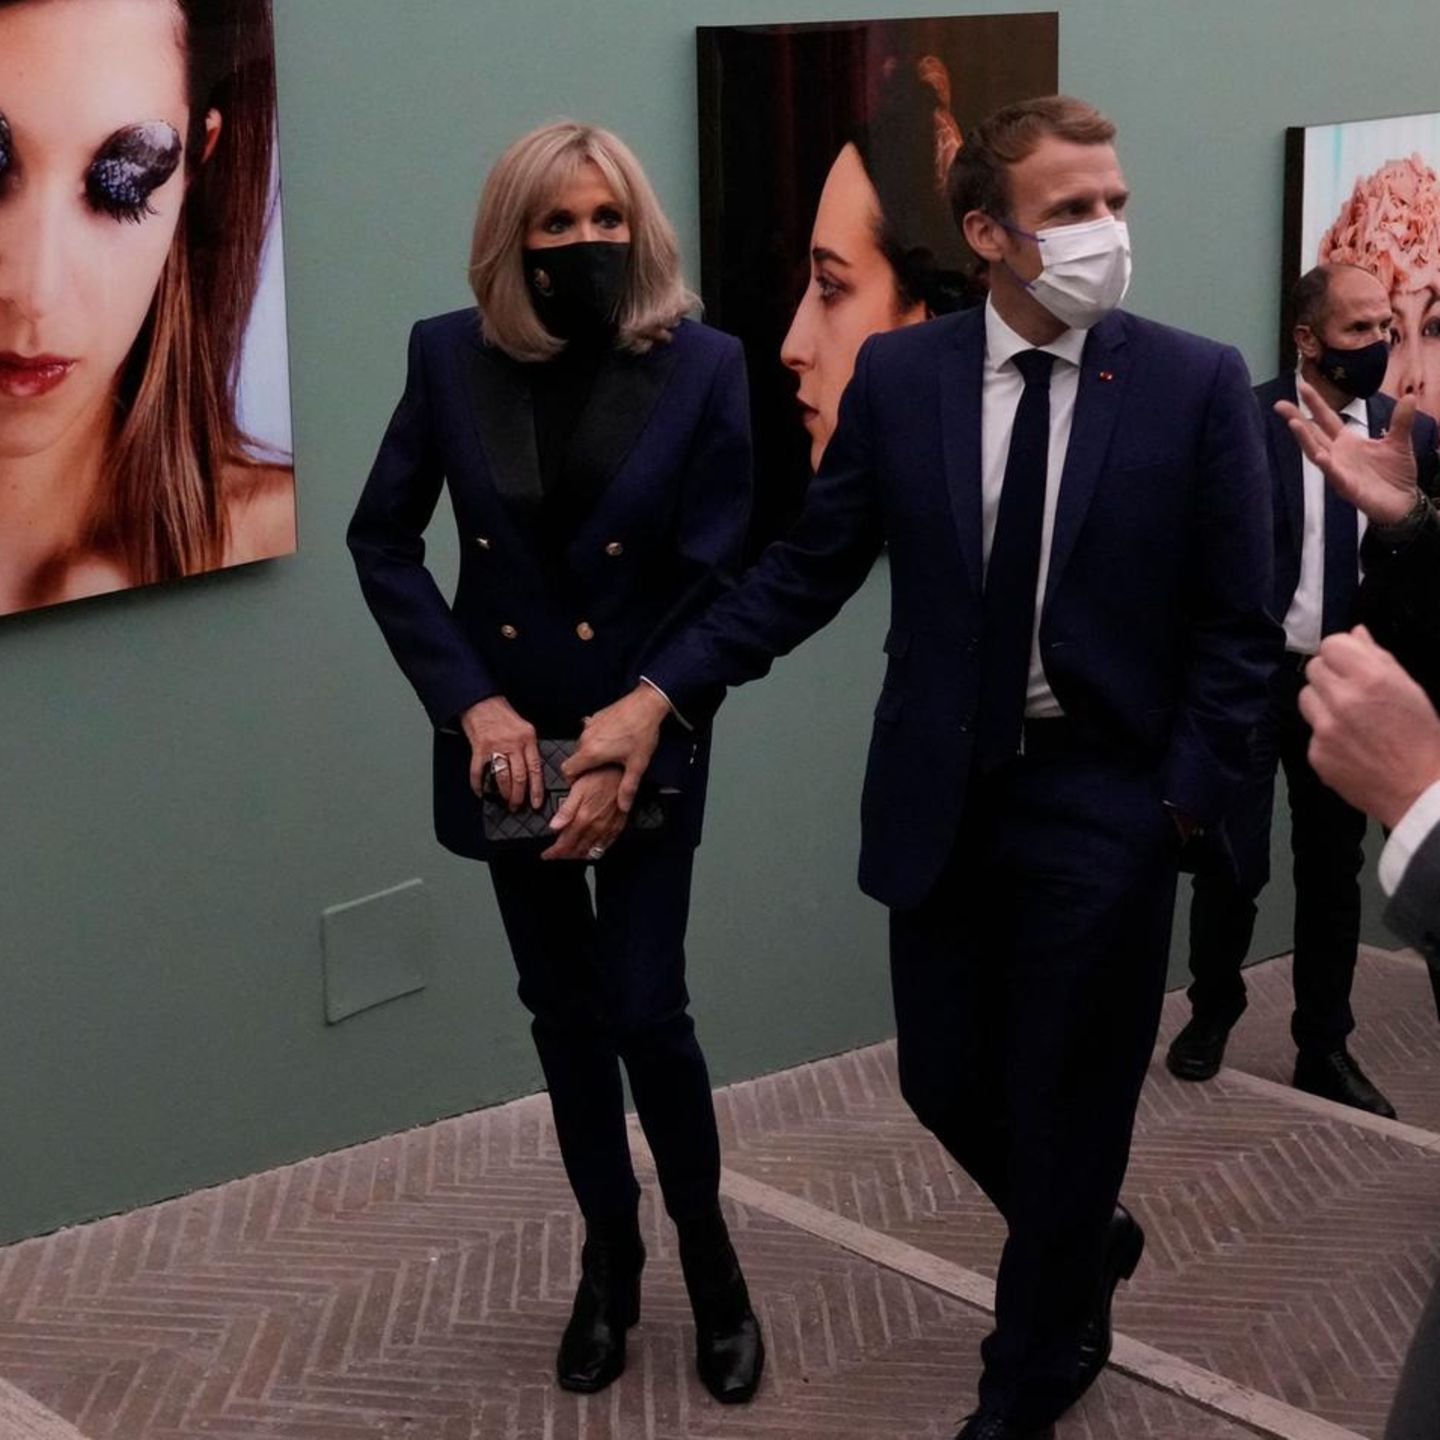 Brigitte Macron trägt am Vorabend des G20-Gipfels 2021 bei einer Ausstellung der französischen Fotografin Natacha Lesueur in Rom einen eleganten monochromen Look. Die Frau des französischen Präsidenten kombiniert ein dunkelblaues Blazer-Kleid mit einer schwarzen Hose, Schuhen und einer kleinen Handtasche von Chanel in derselben Farbe. Ein schlichter klassischer Auftritt, eben ganz nach Macrons Geschmack. 